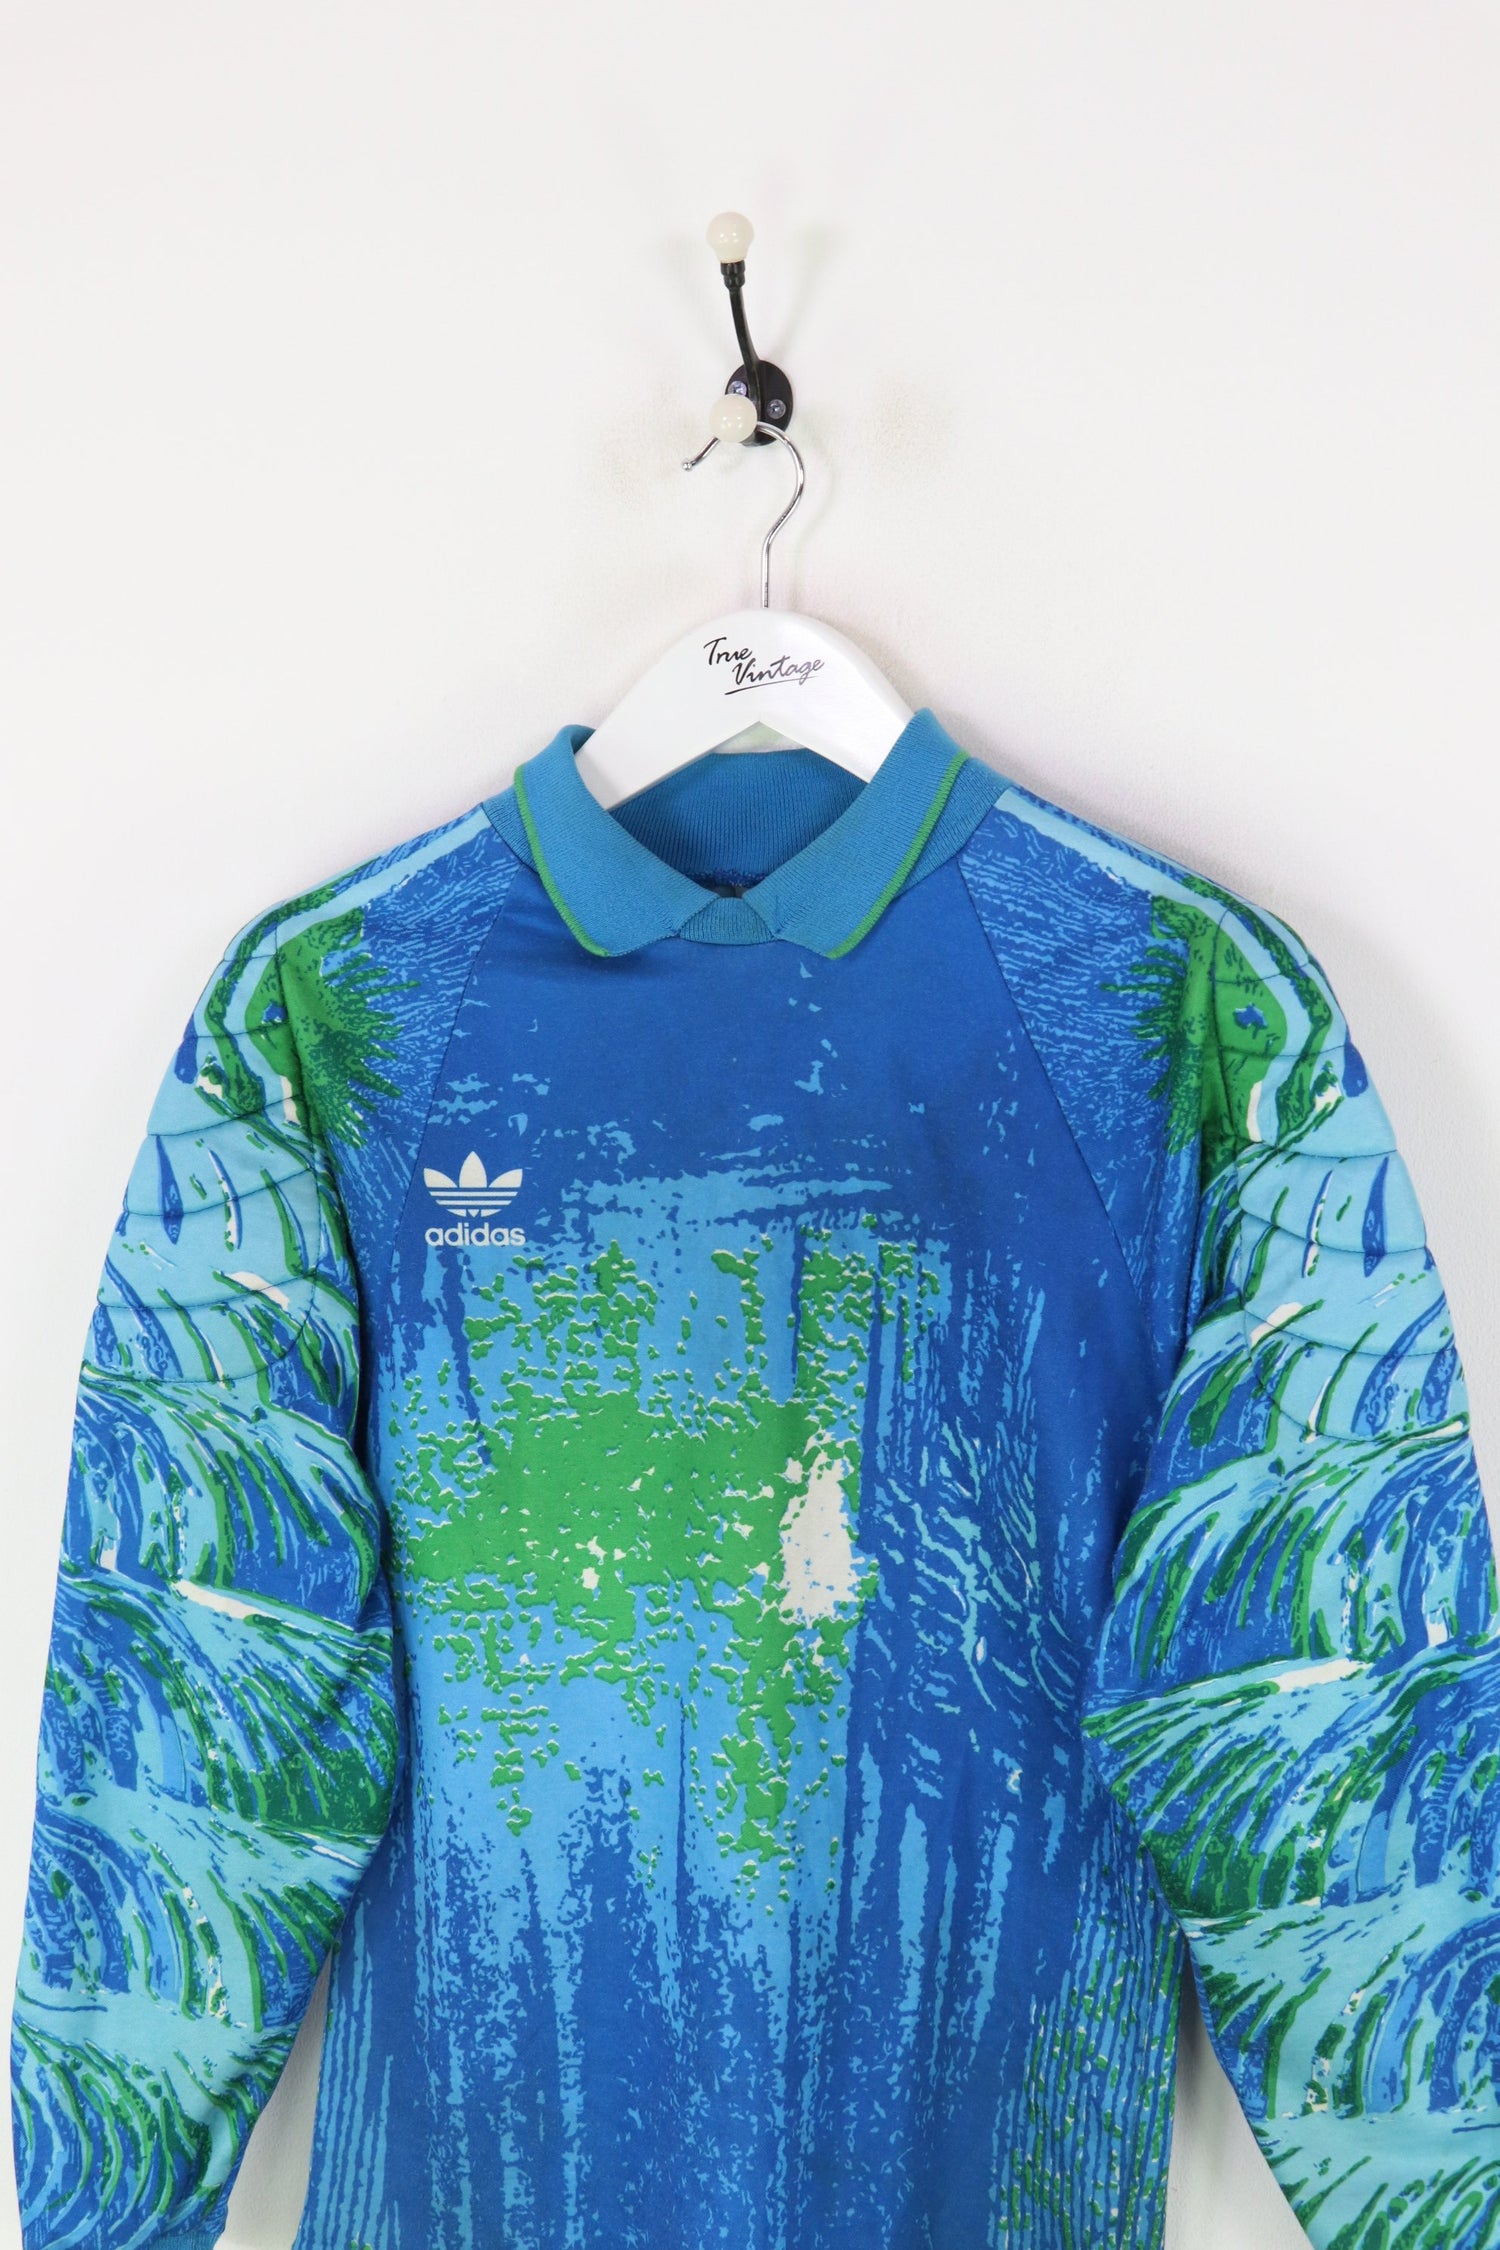 Adidas Goalkeeper Shirt Blue/Green Small